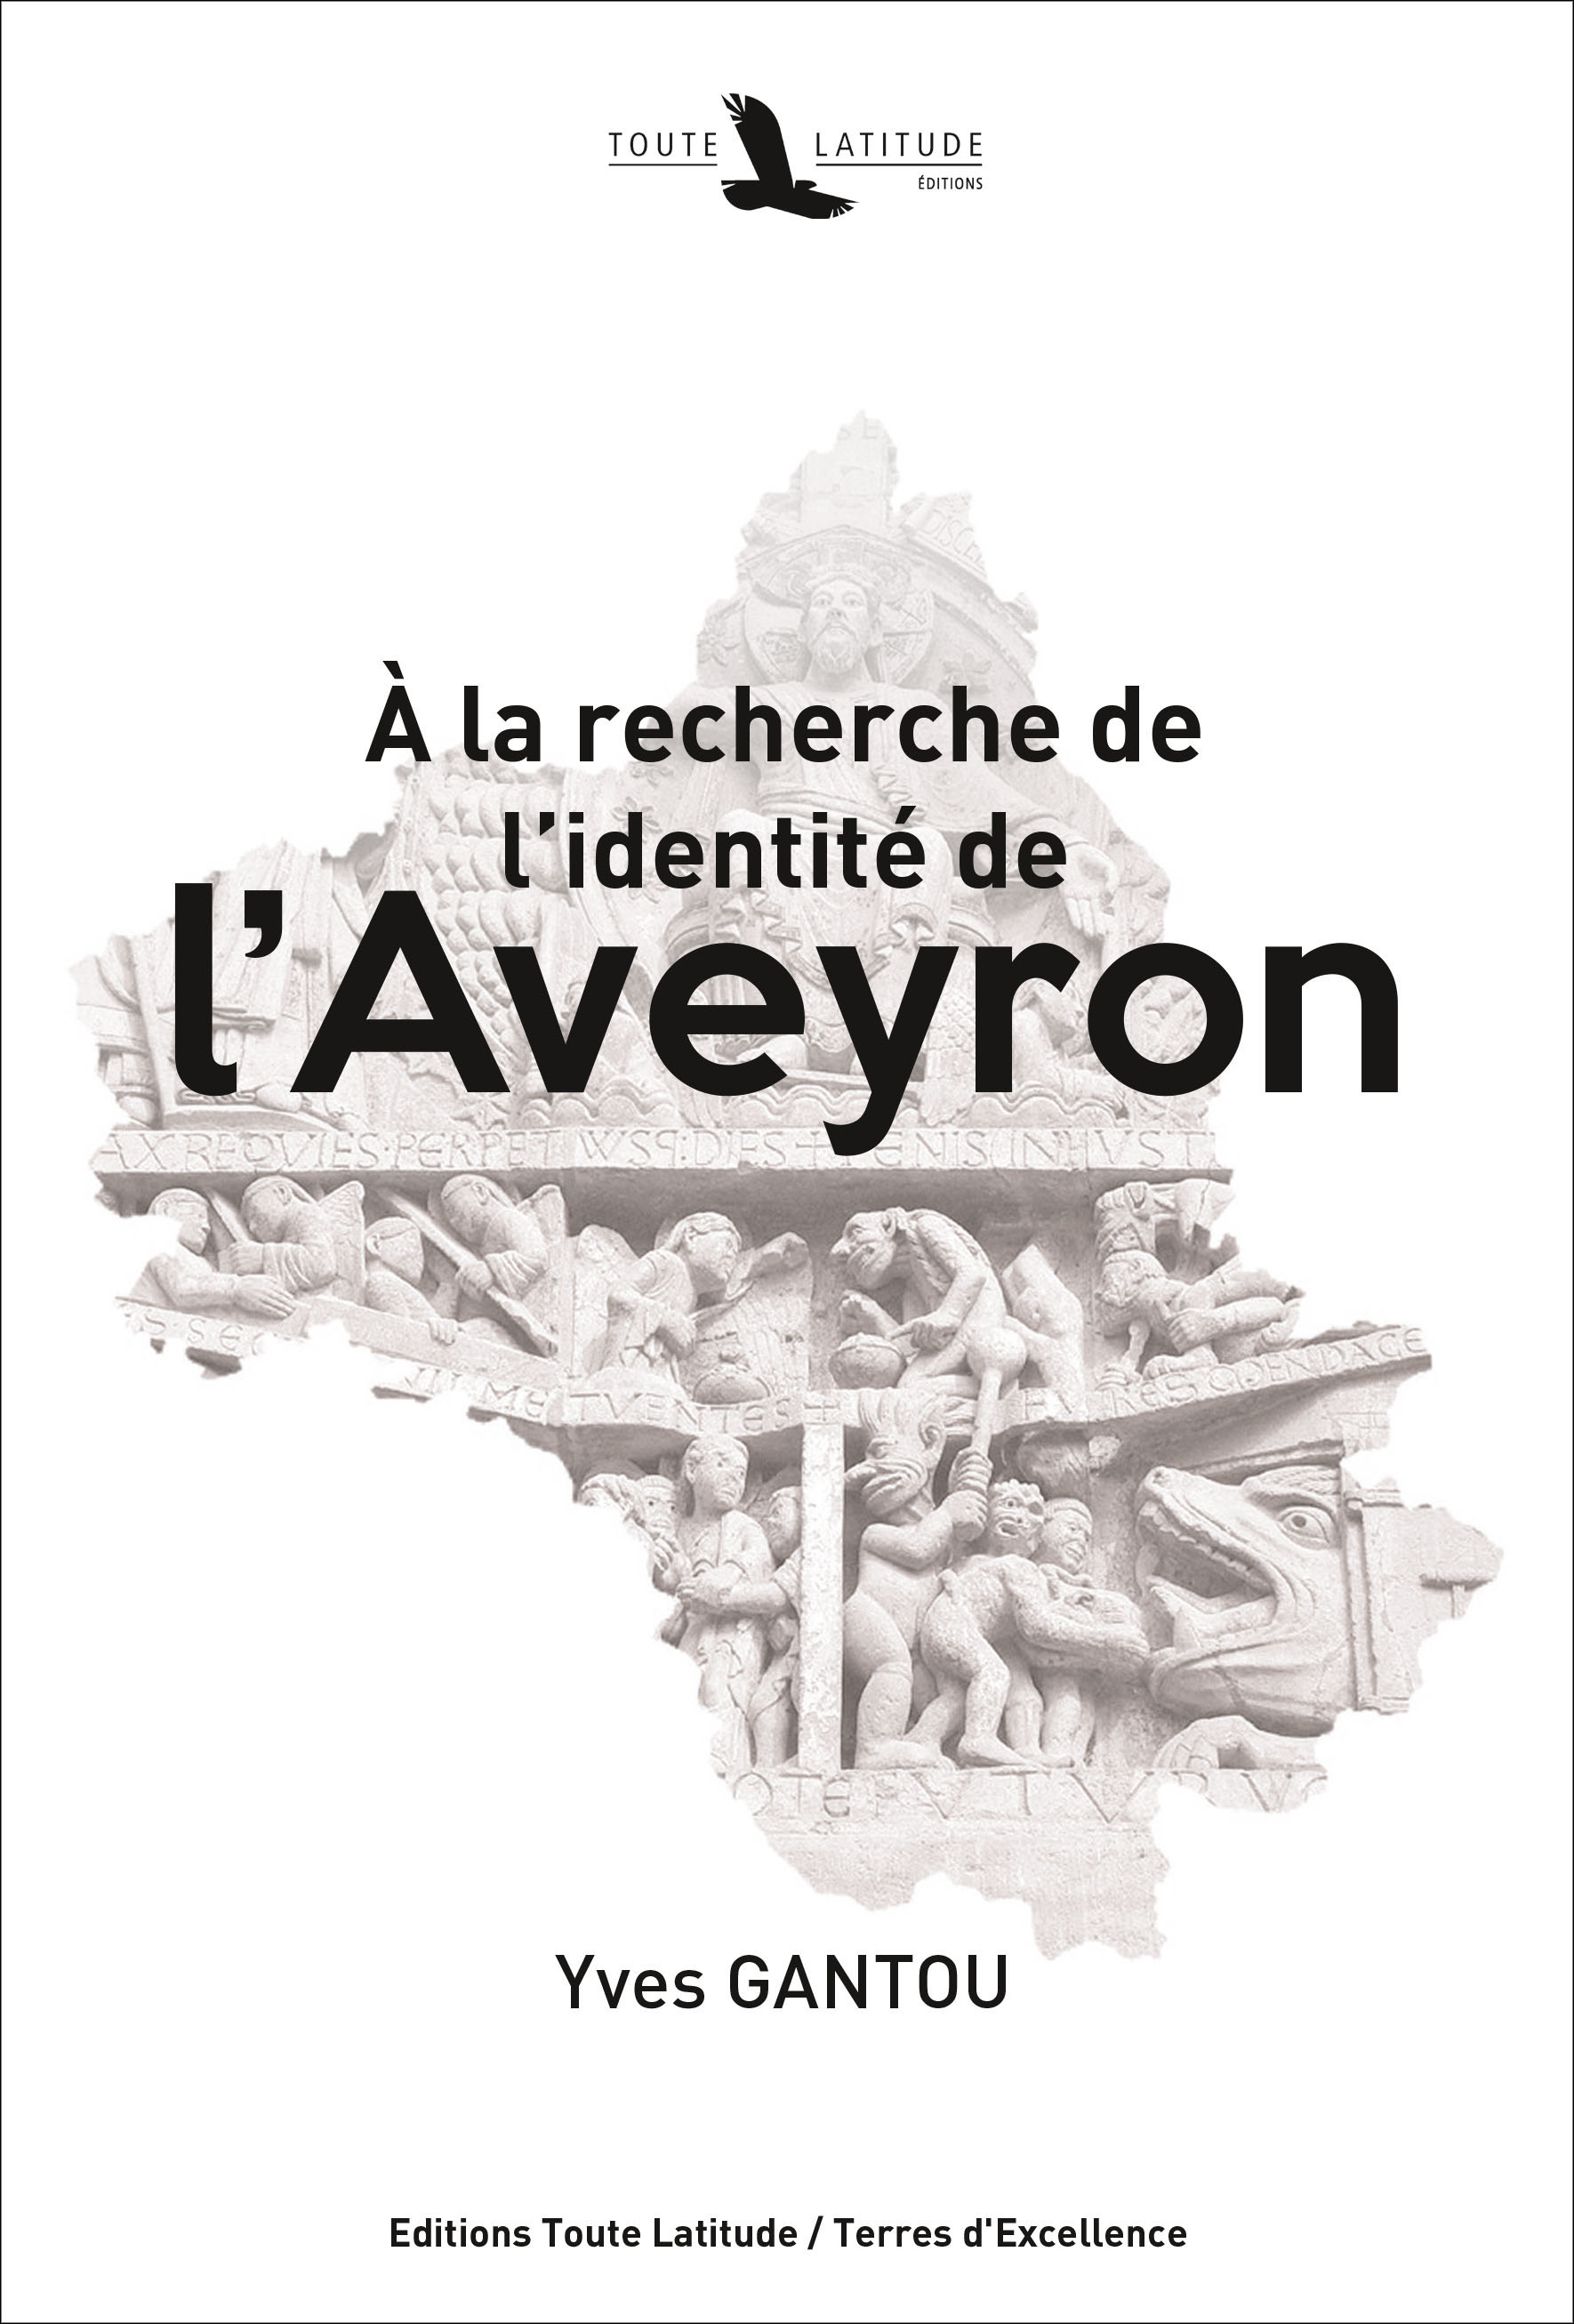 Aveyron-Gantou.indd